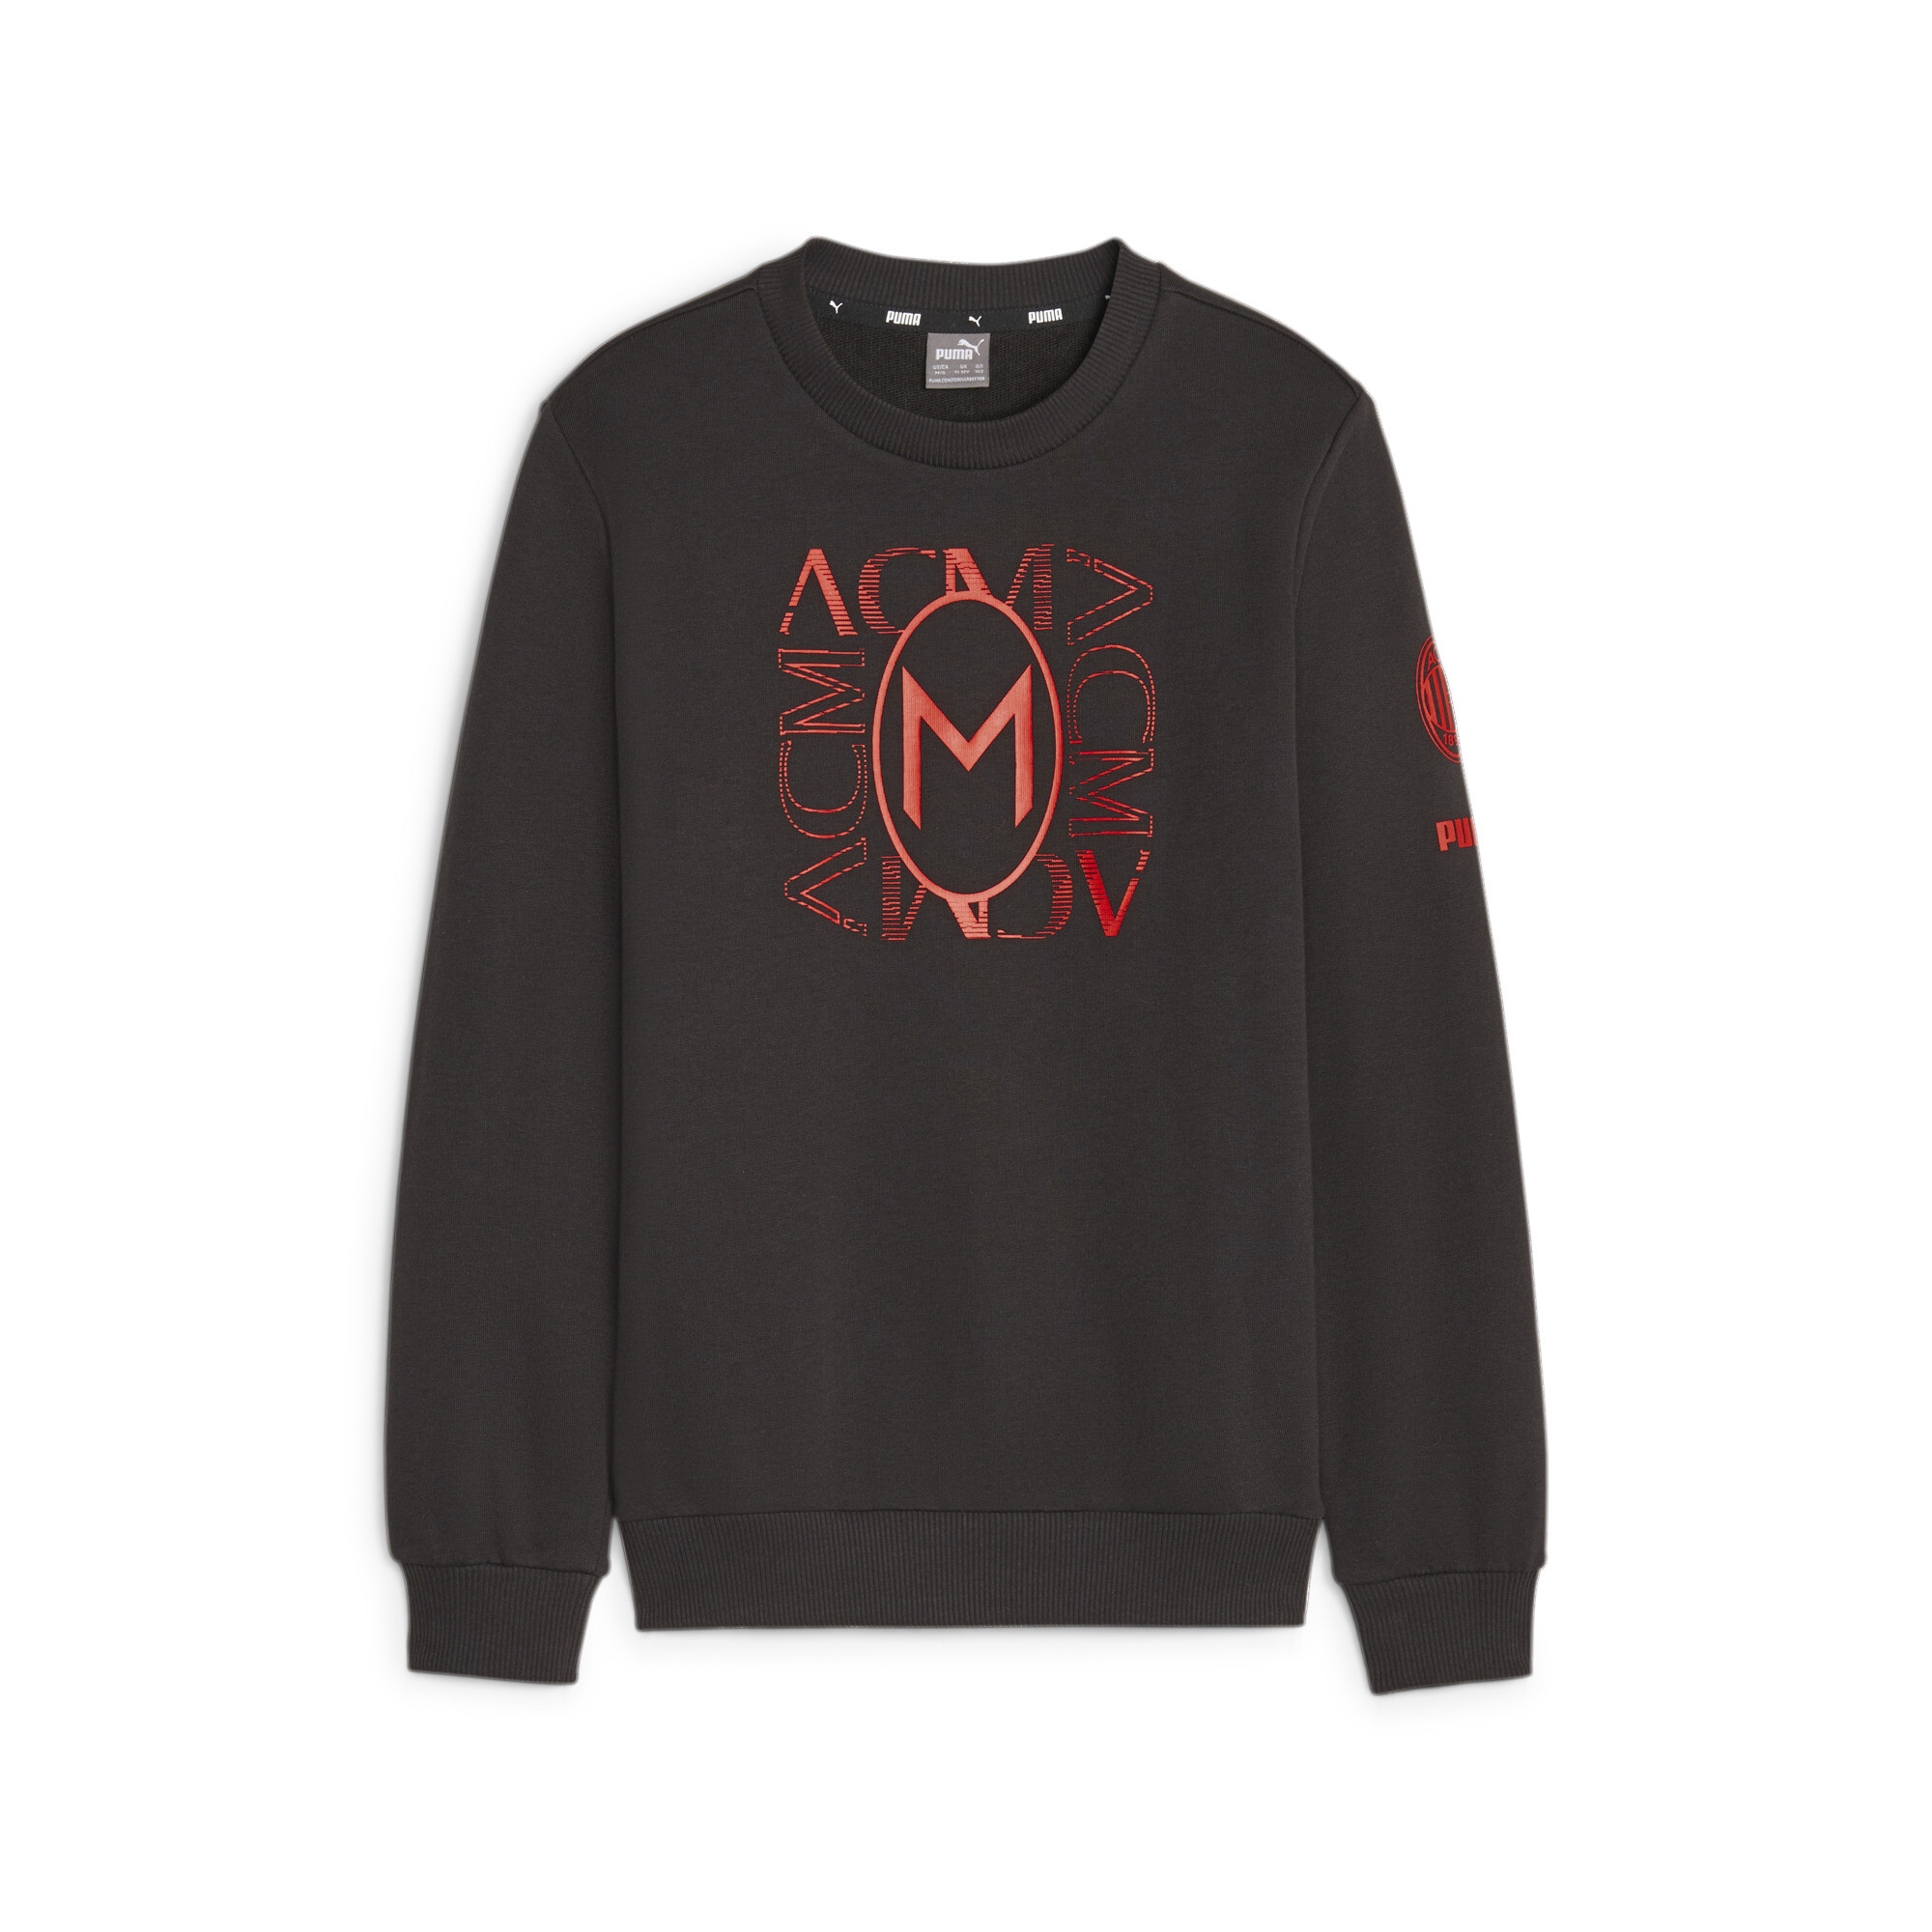 Puma AC Milan Ftbl Core Youth Sweatshirt, Black, Size 15-16Y, Clothing